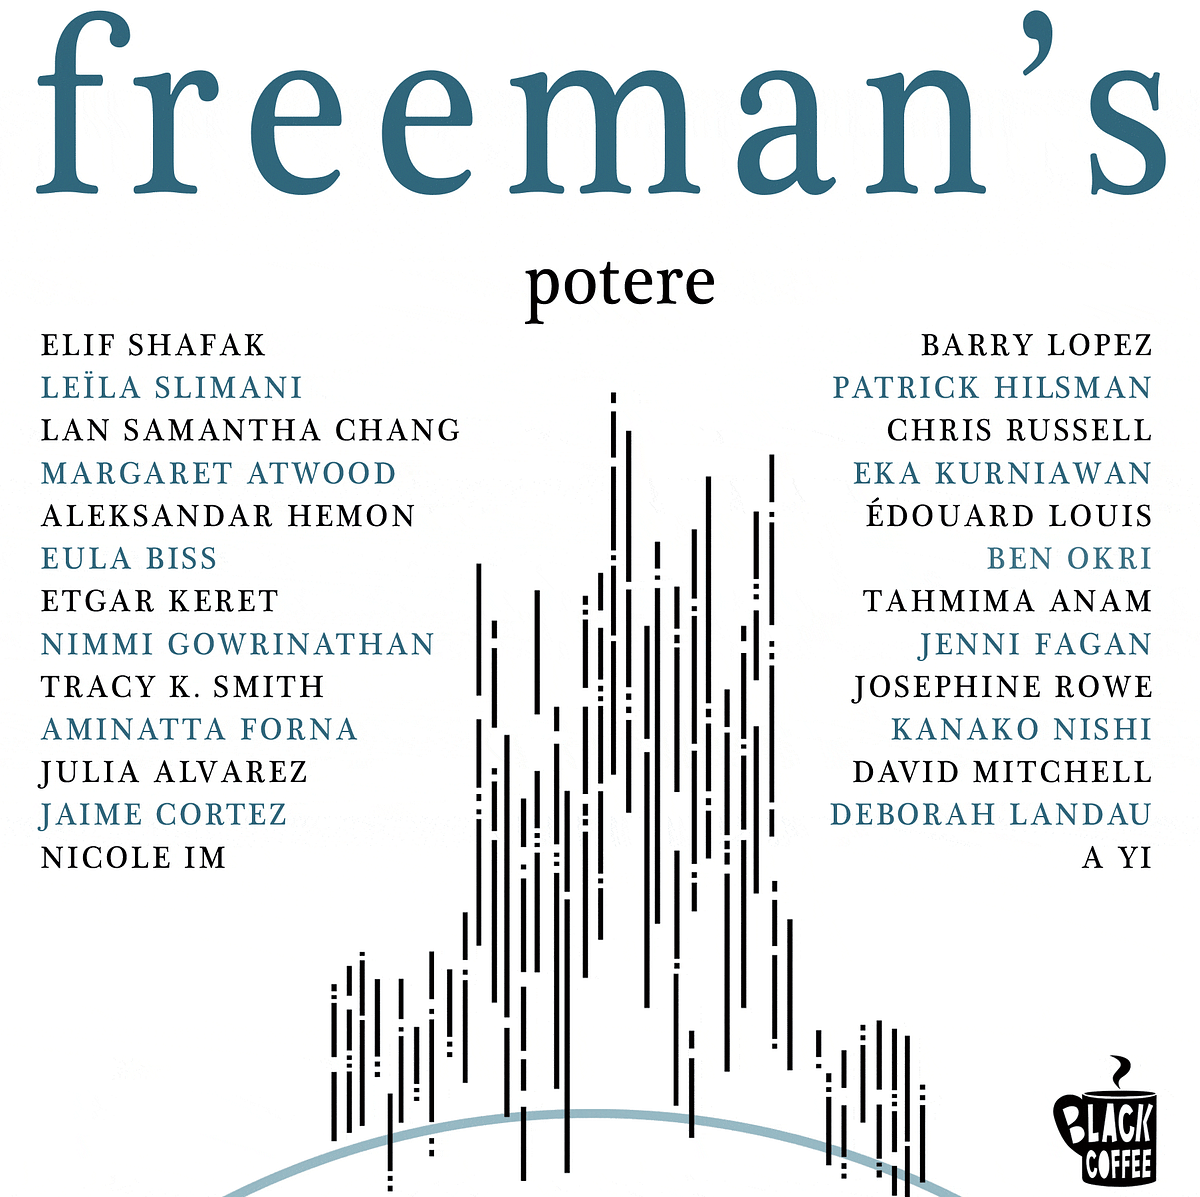 Freeman's potere: una raccolta di racconti, poesie e saggi dedicati al potere